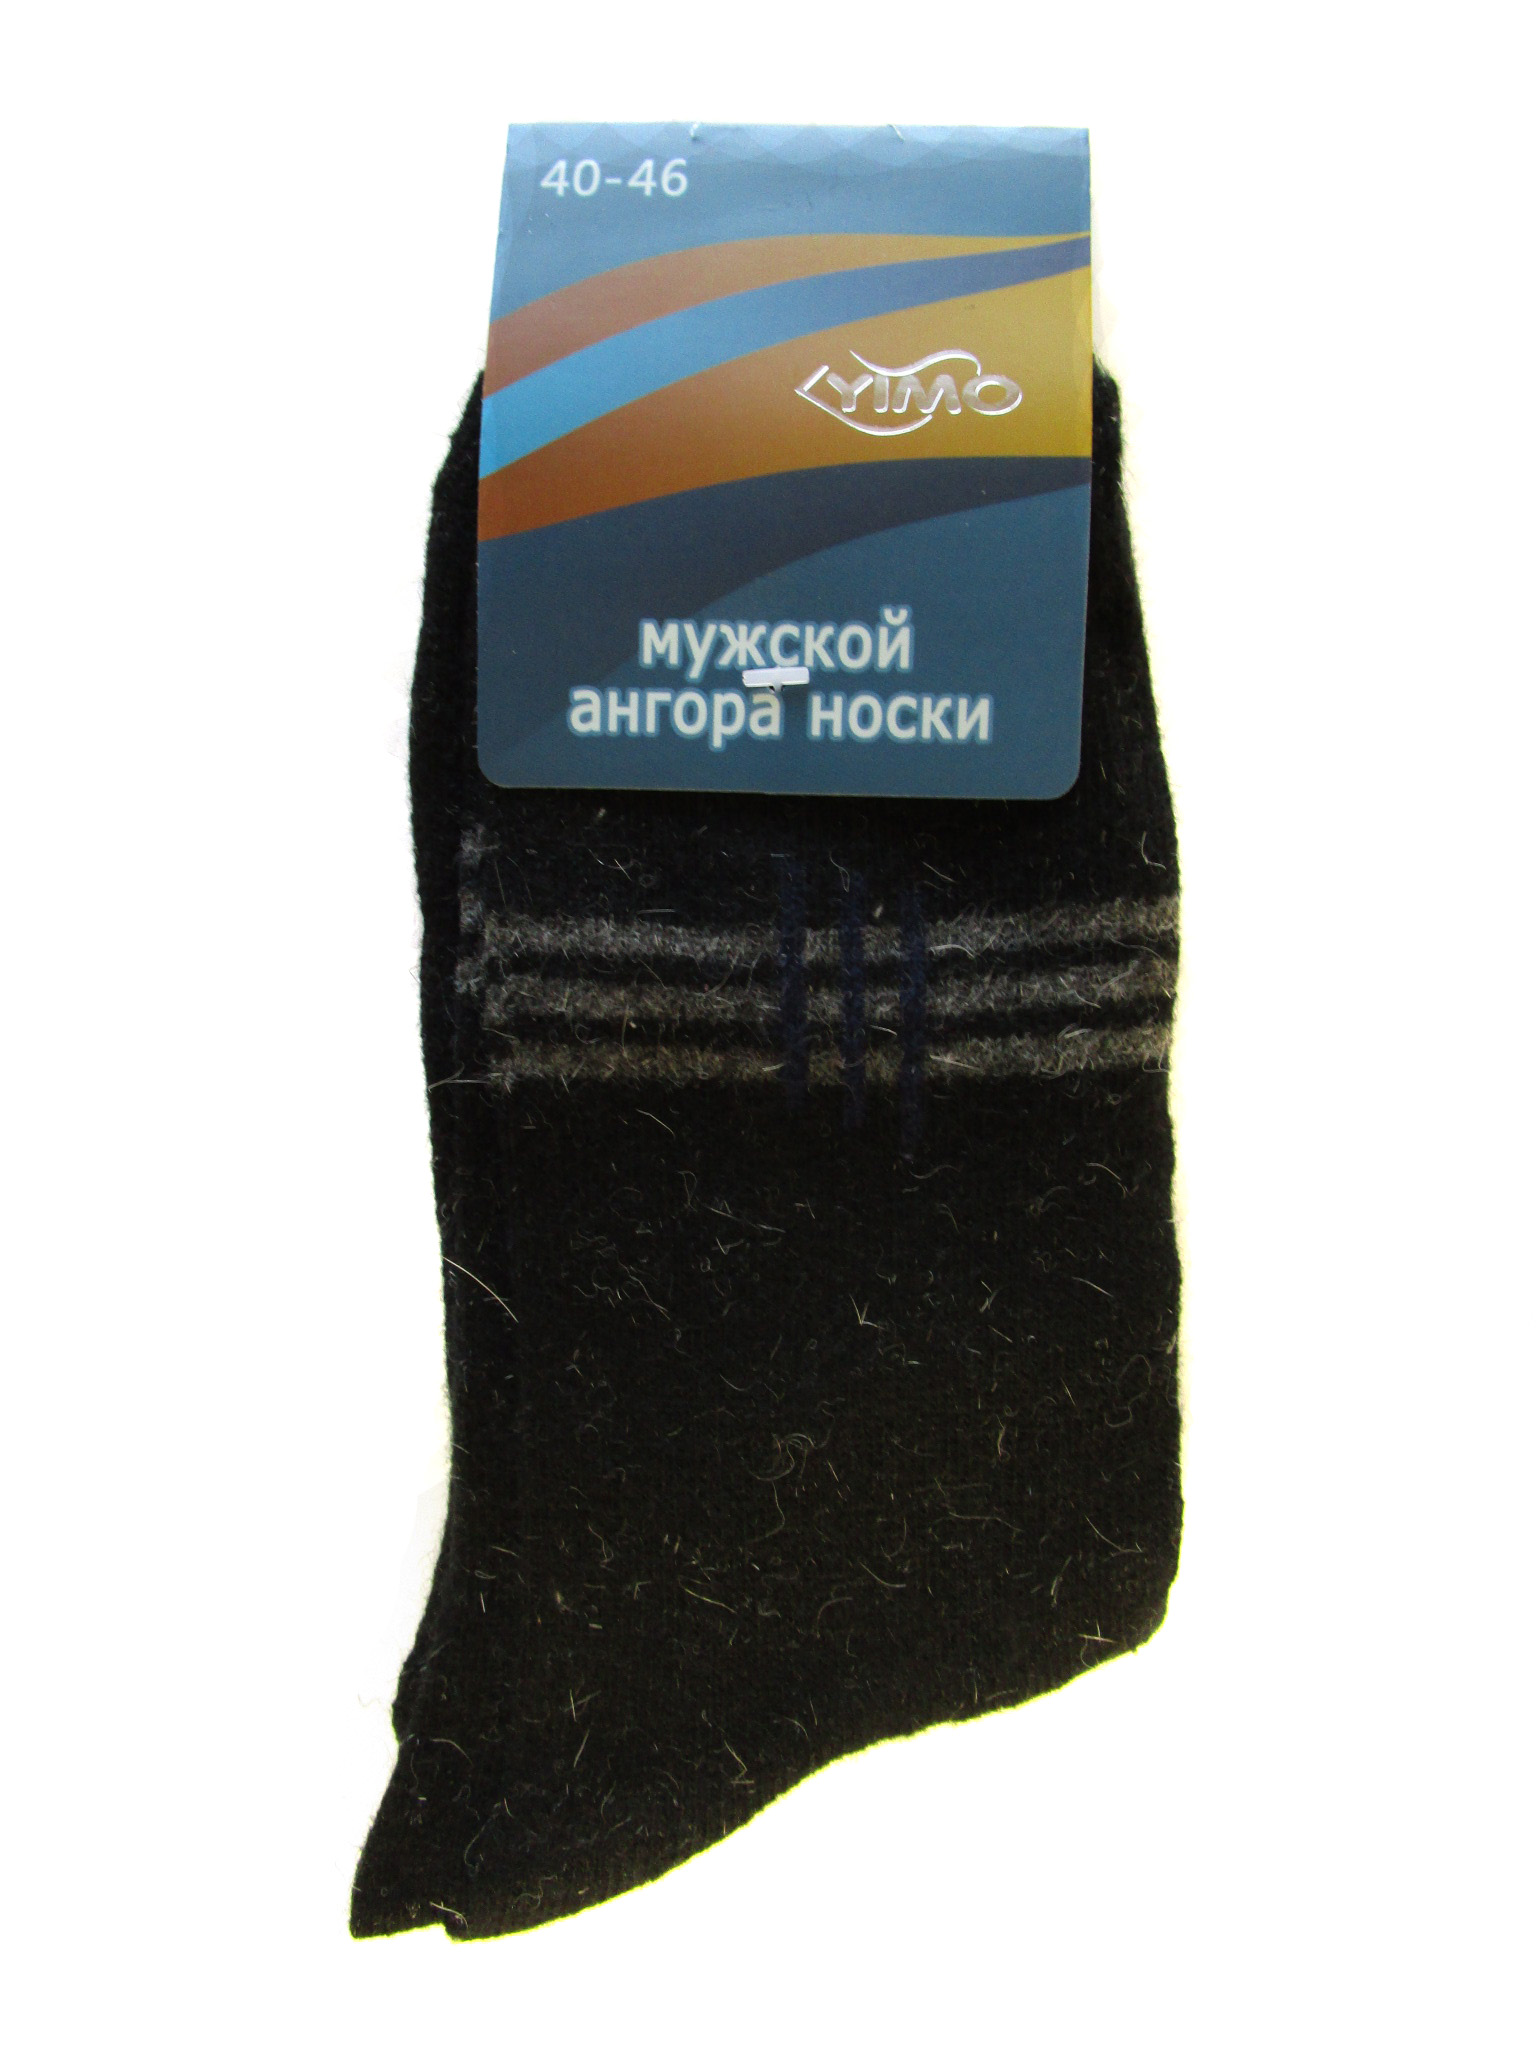 Мужские носки теплые "Yimo" (арт.1401)